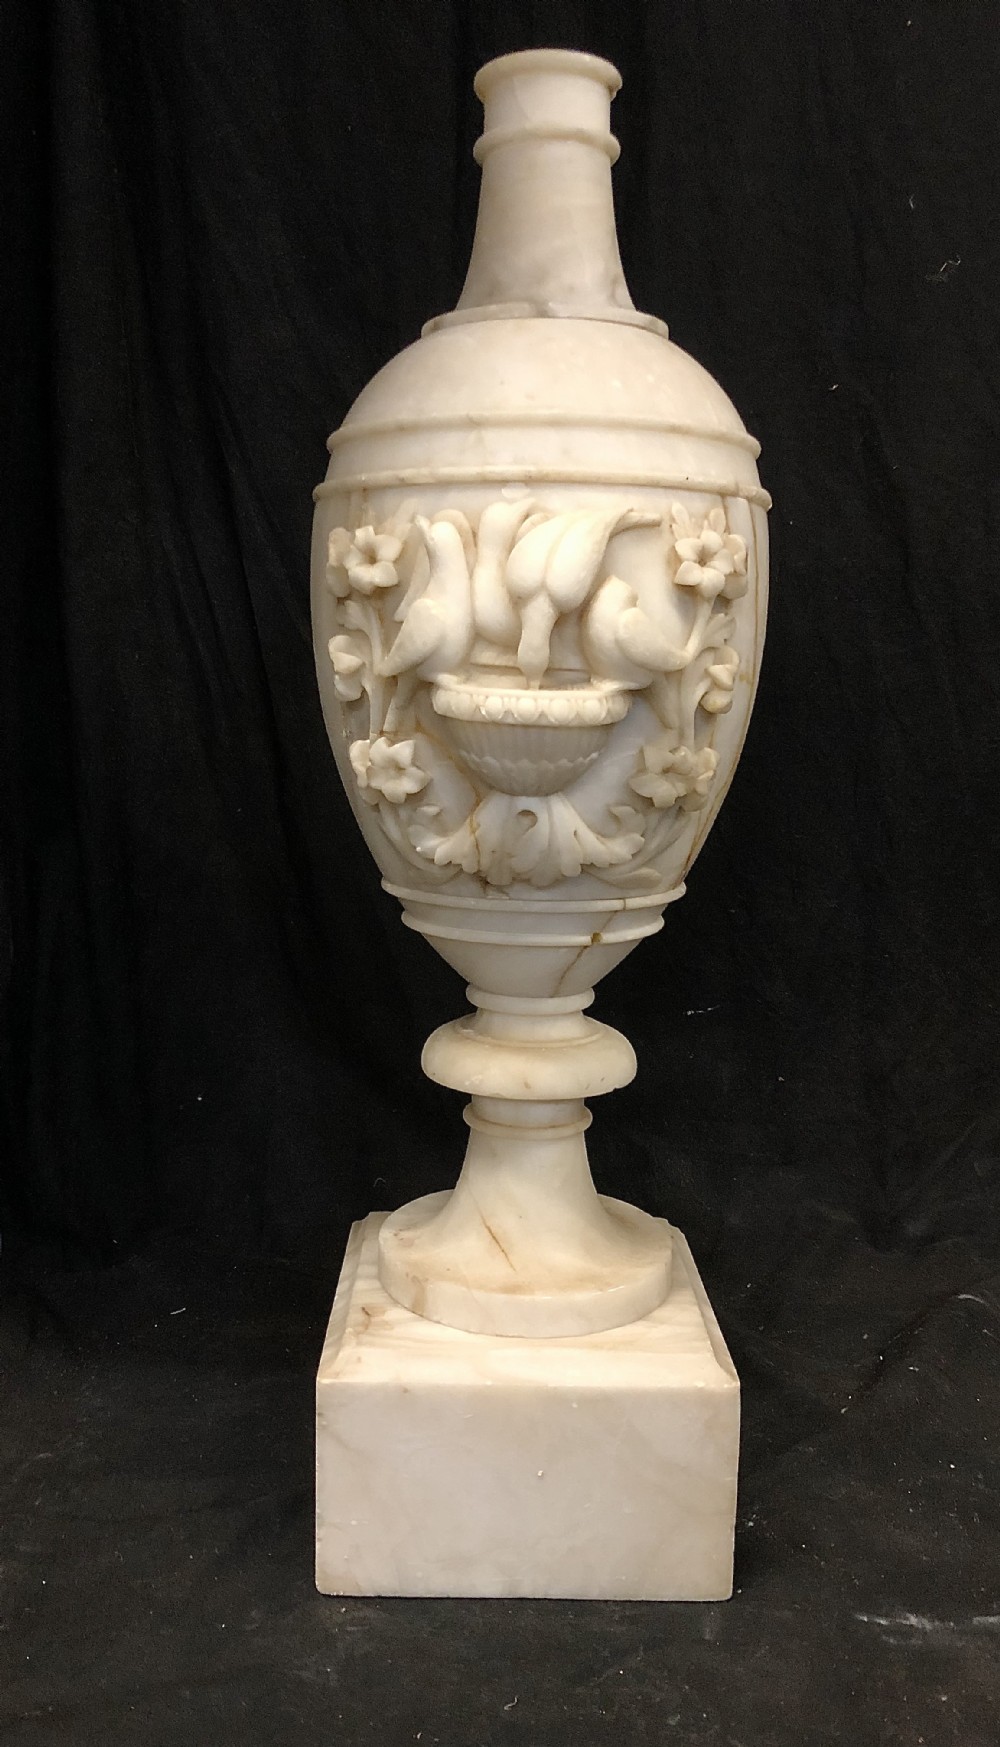 c19th large alabaster vase with carved birds